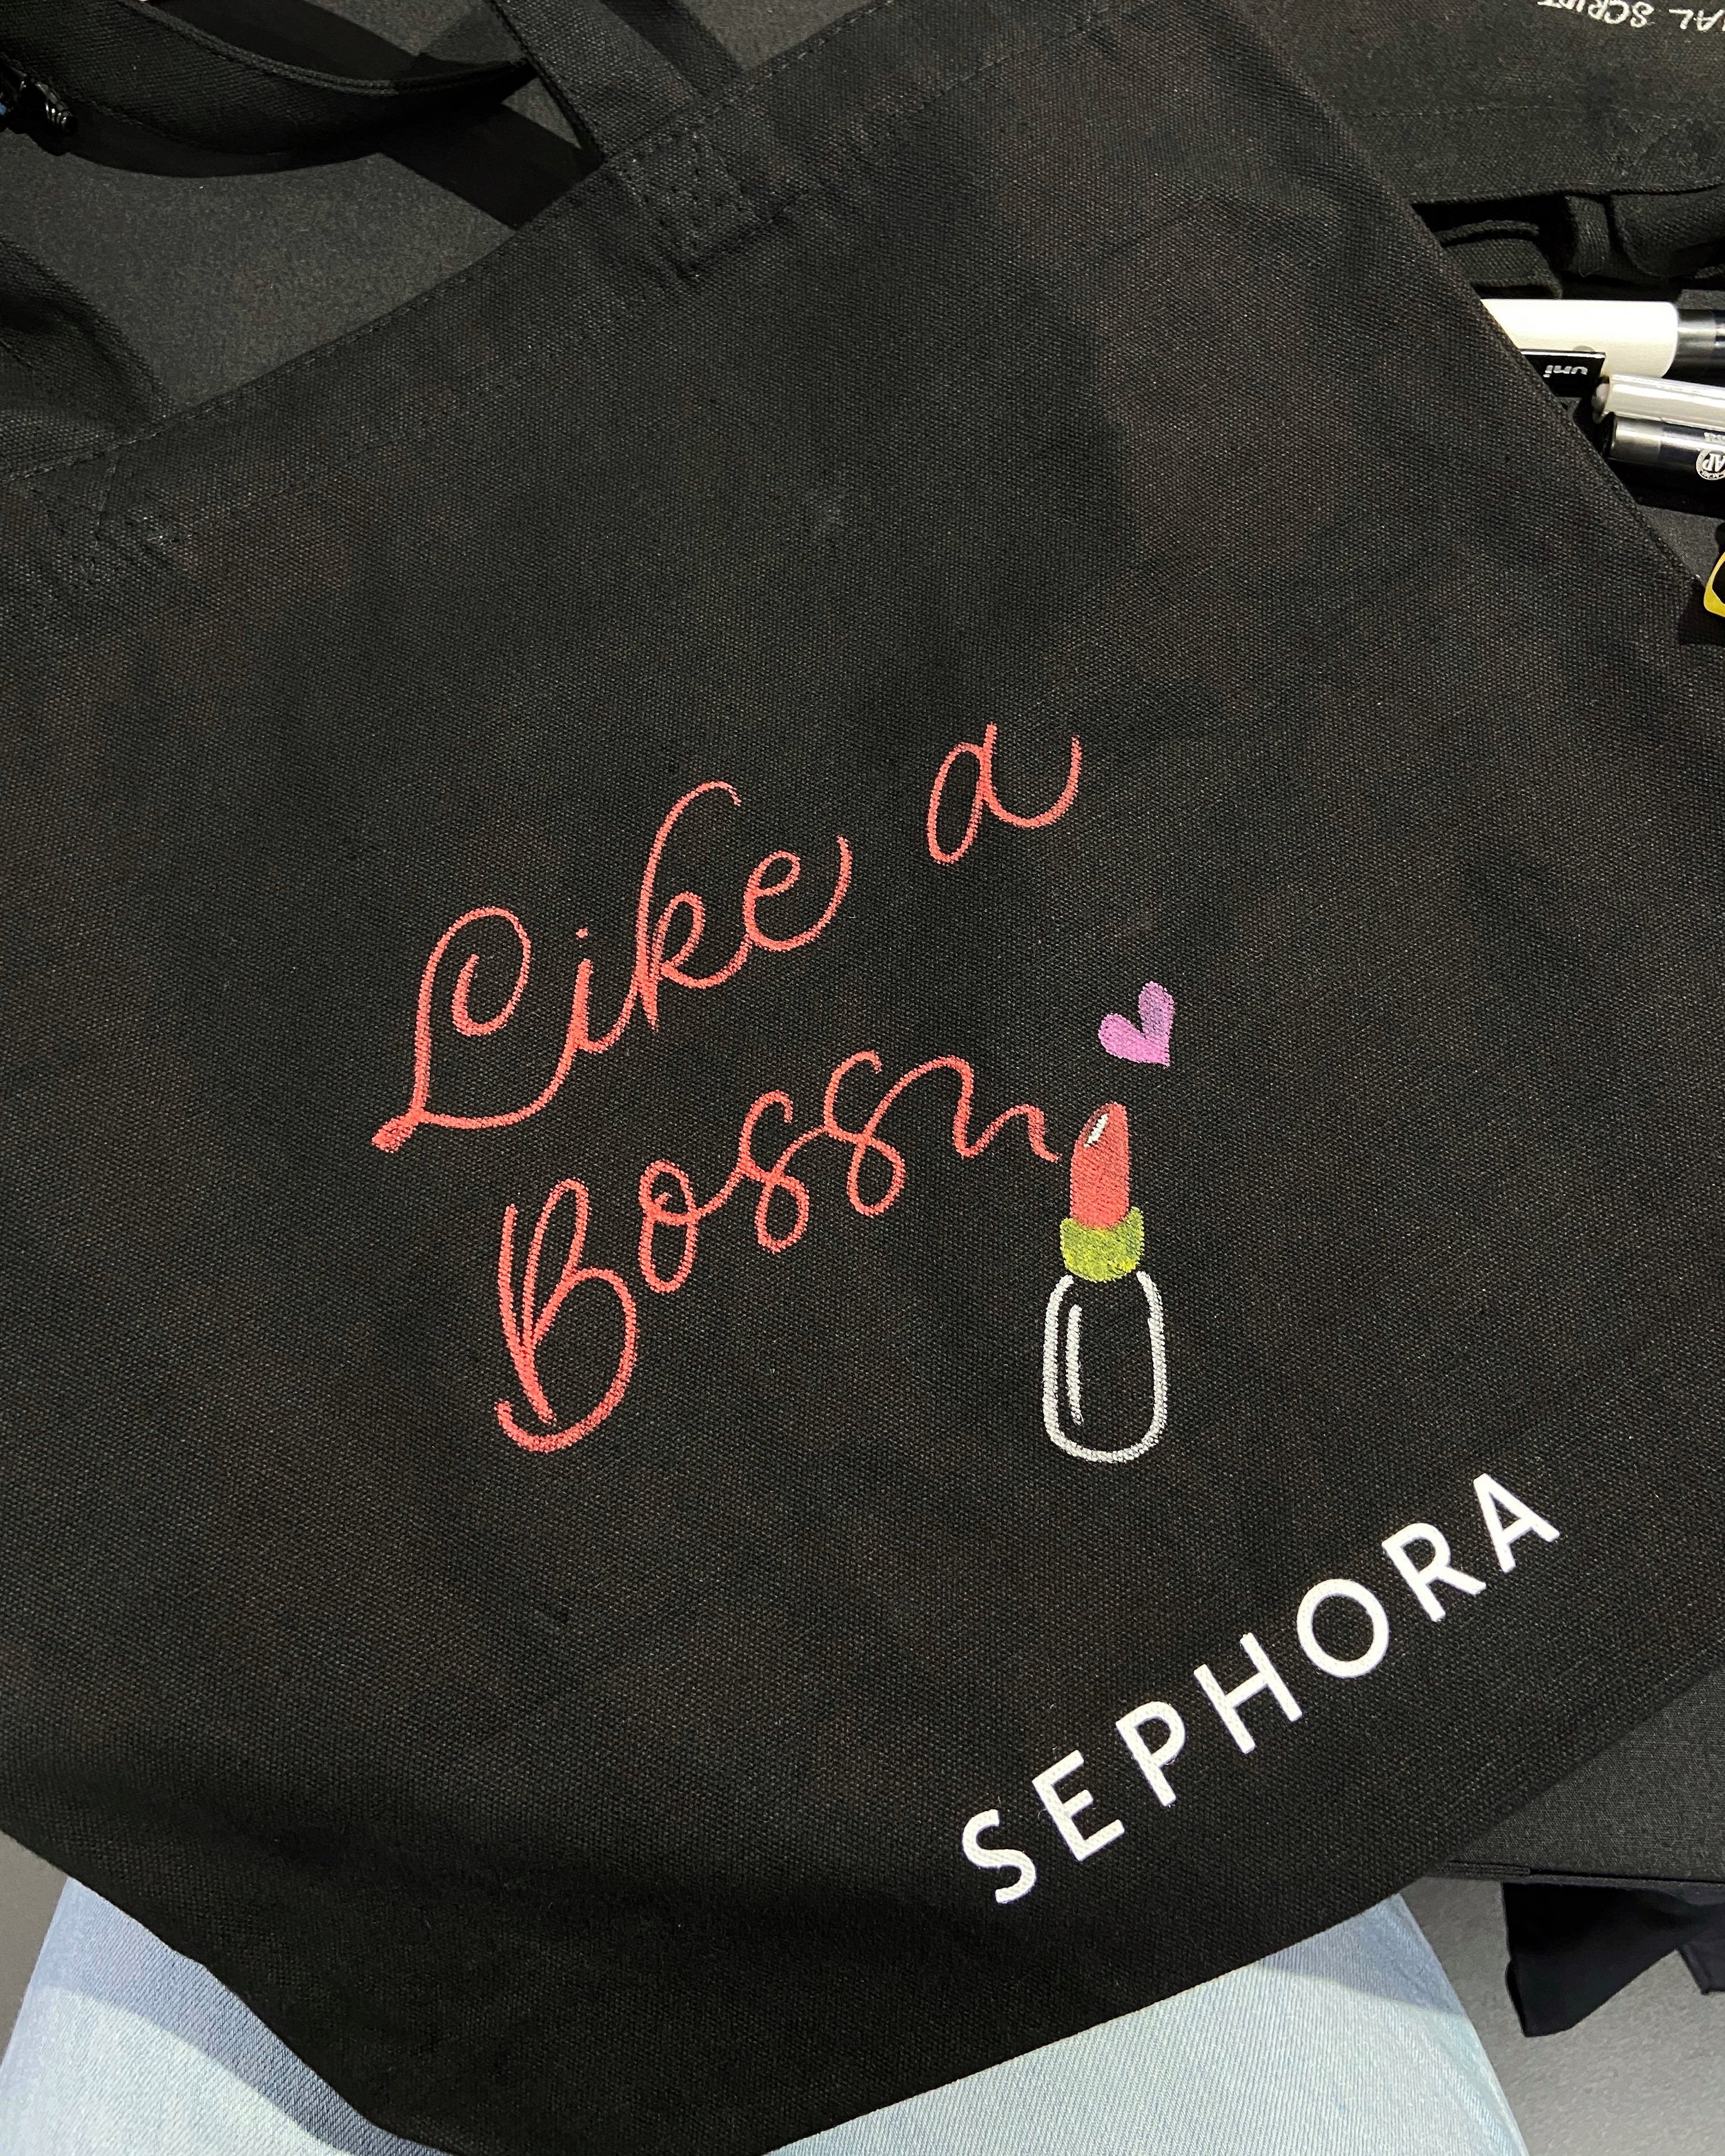 Sephora MBS Live Lettering & Illustration on Tote Bag 8.jpg